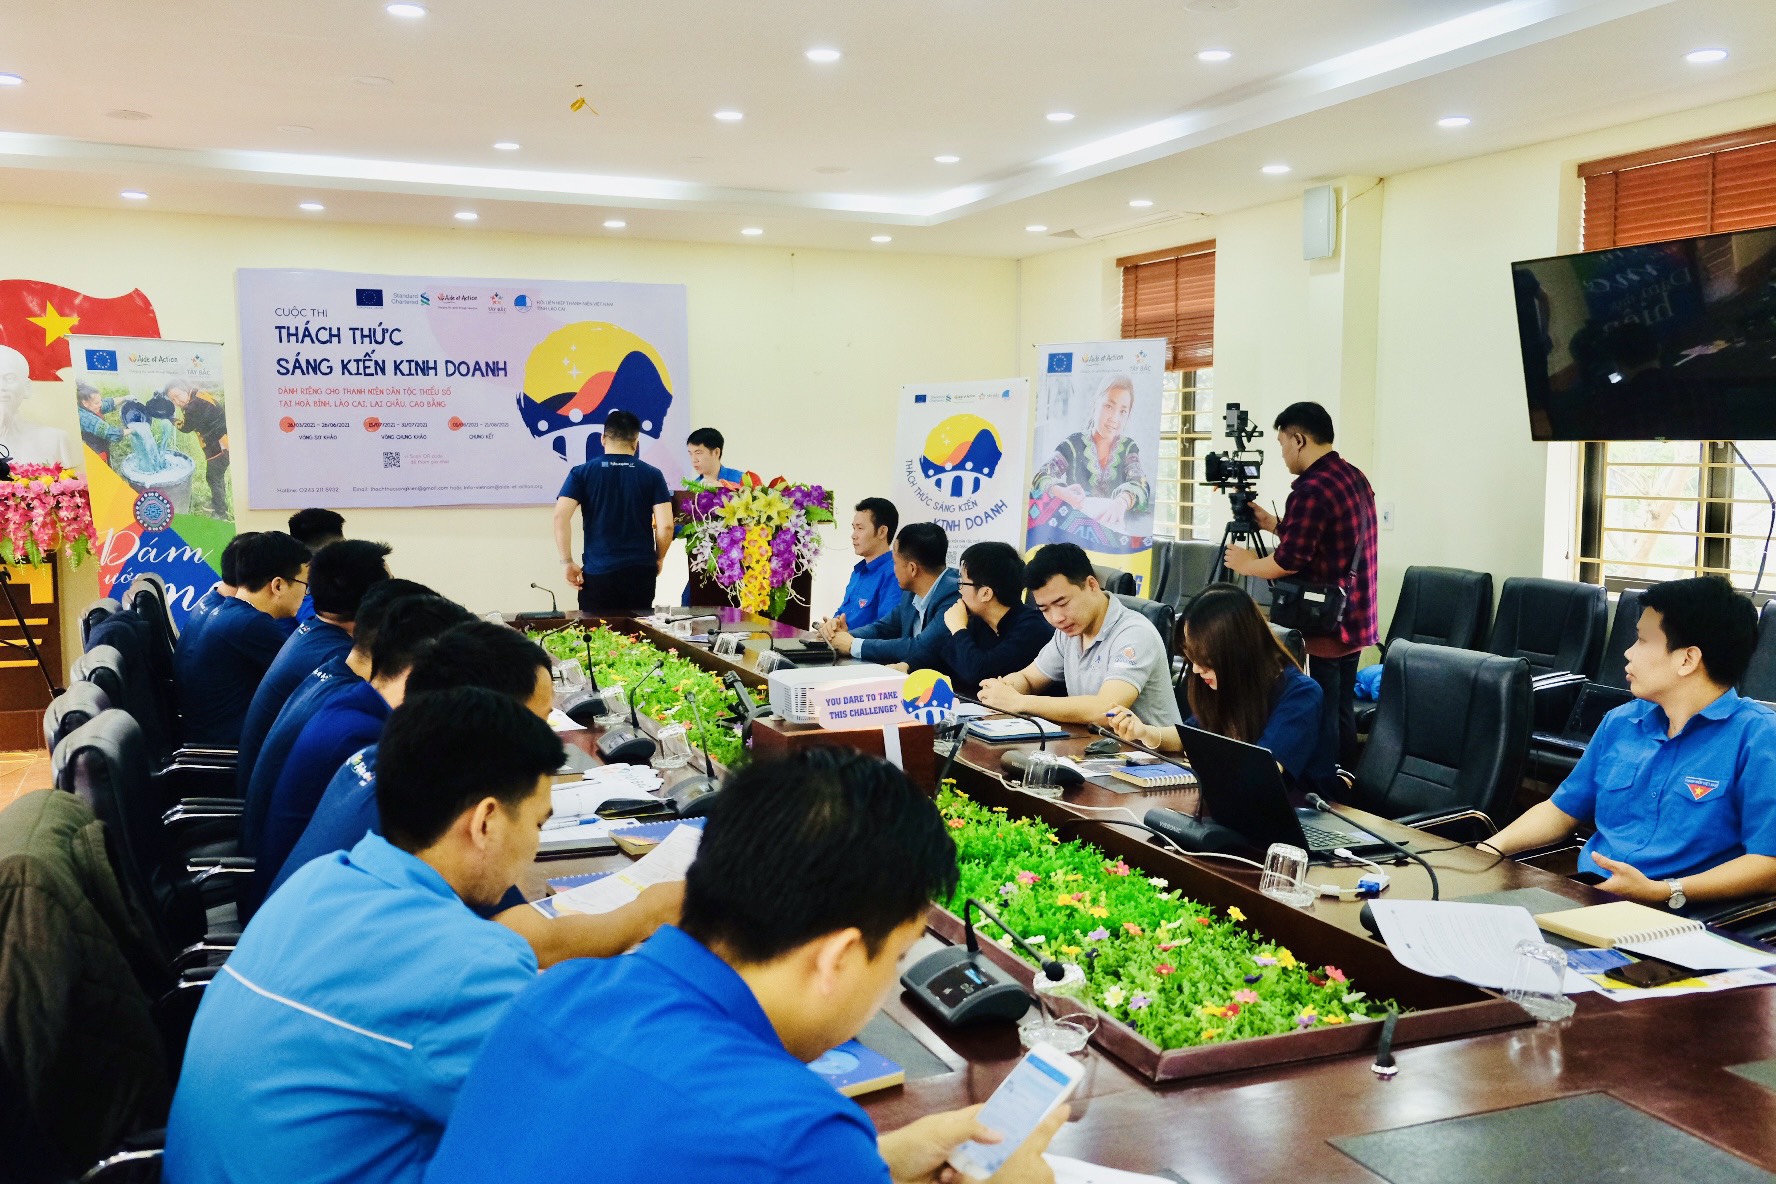 Phát động cuộc thi Thách thức Sáng kiến Kinh Doanh tại tỉnh Lào Cai